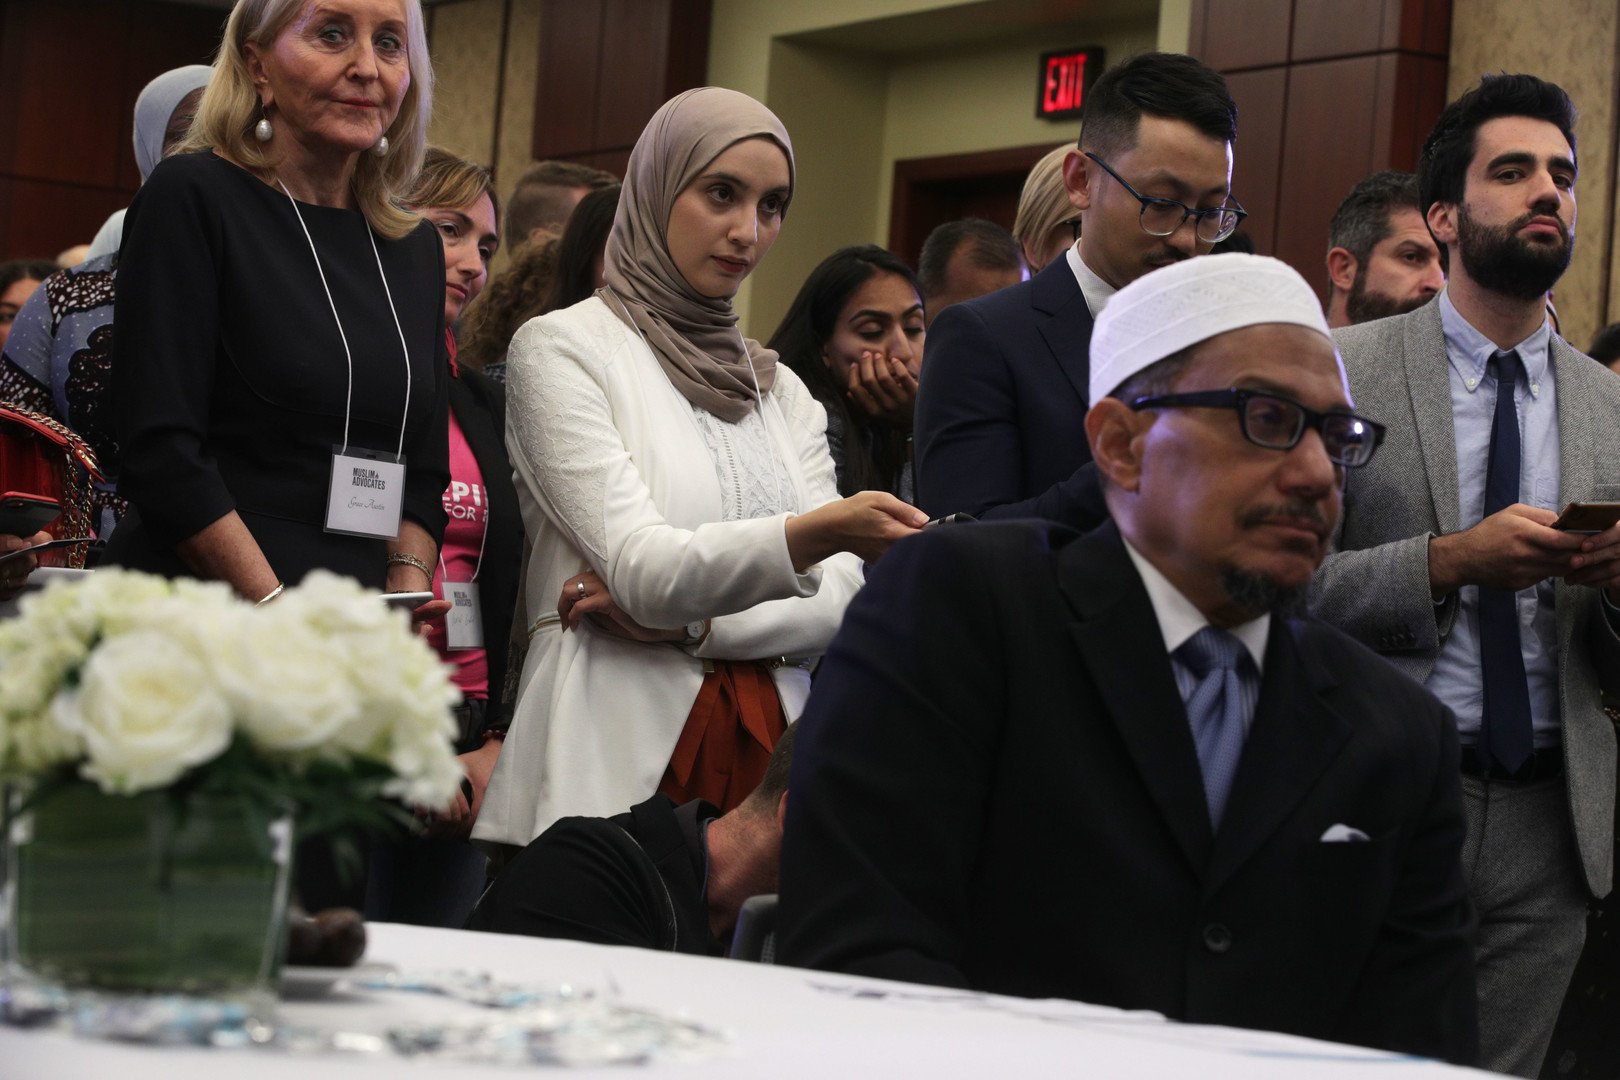 فعالية هي الأولى من نوعها.. مأدبة إفطار رمضانية في الكونغرس الأمريكي (صور)